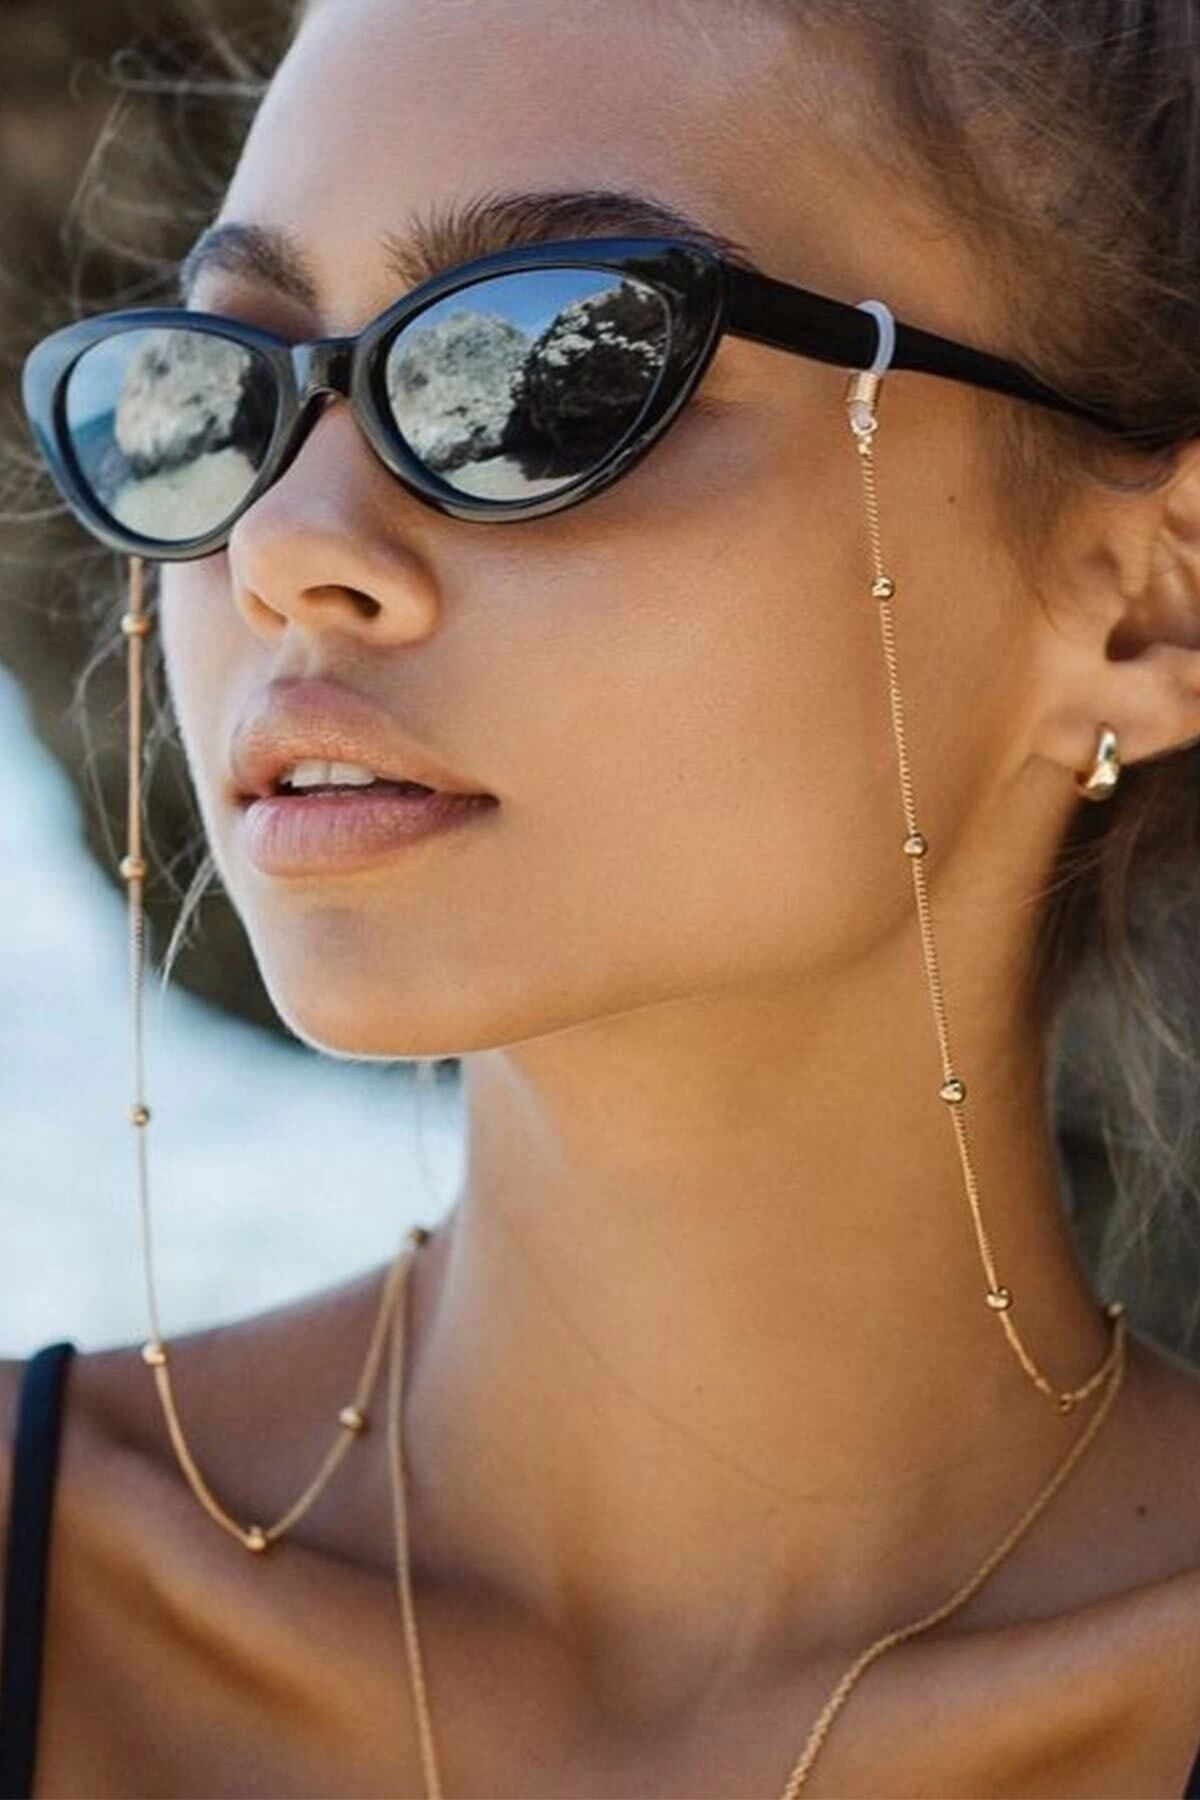 Tina Wear El Yapımı Minik Top Model Zincir Gözlük Askısı Ve Güneş Gözlüğü Aksesuarı - 96169